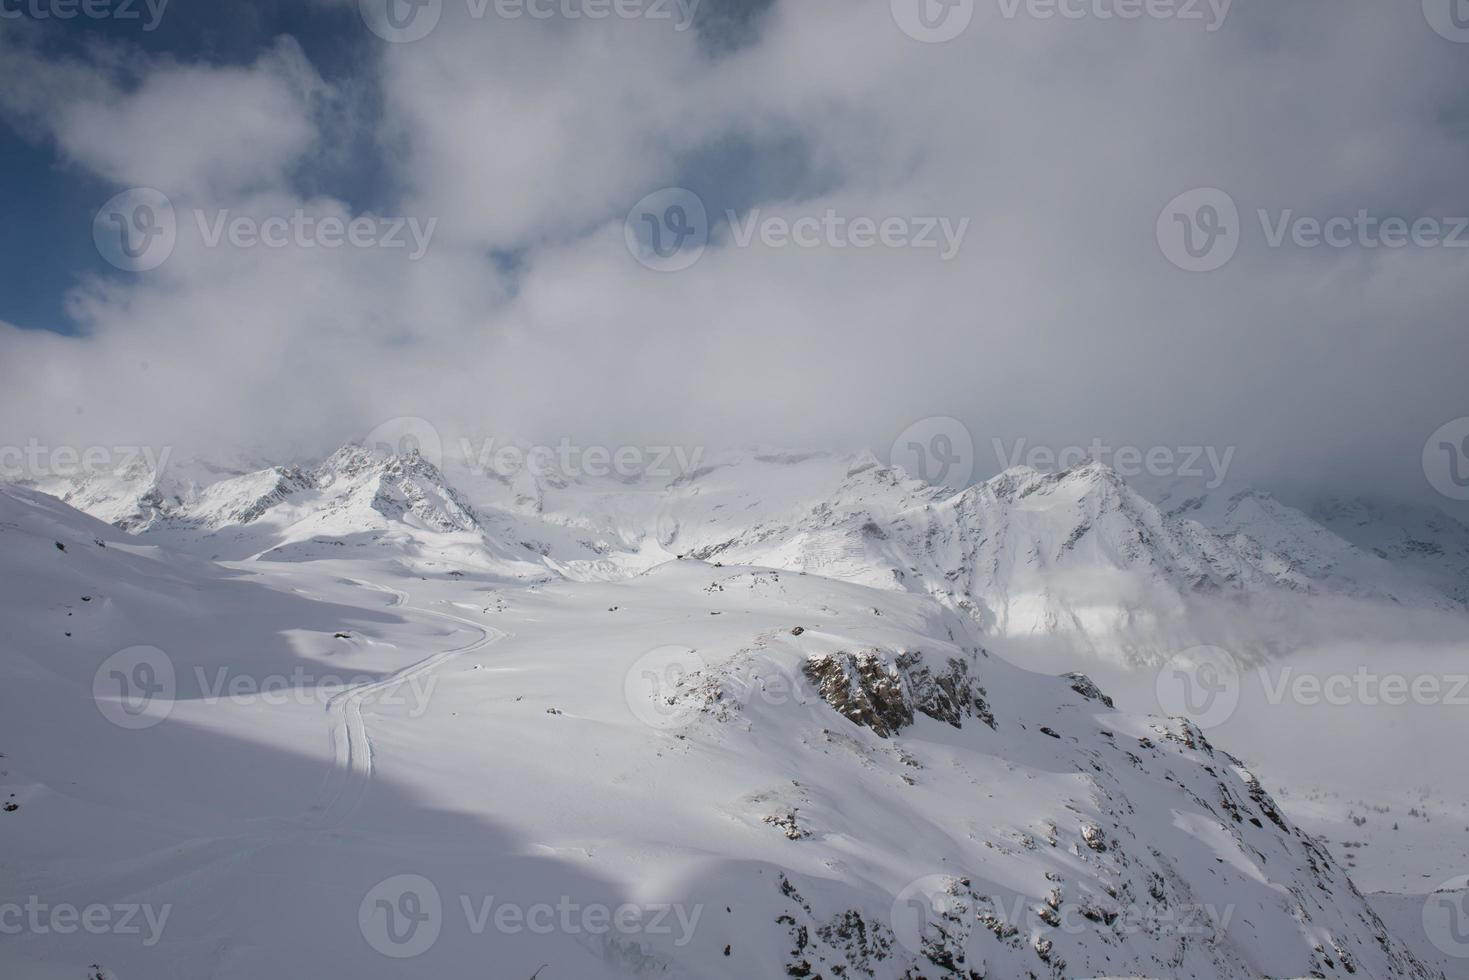 montanha matterhorn zermatt suíça foto